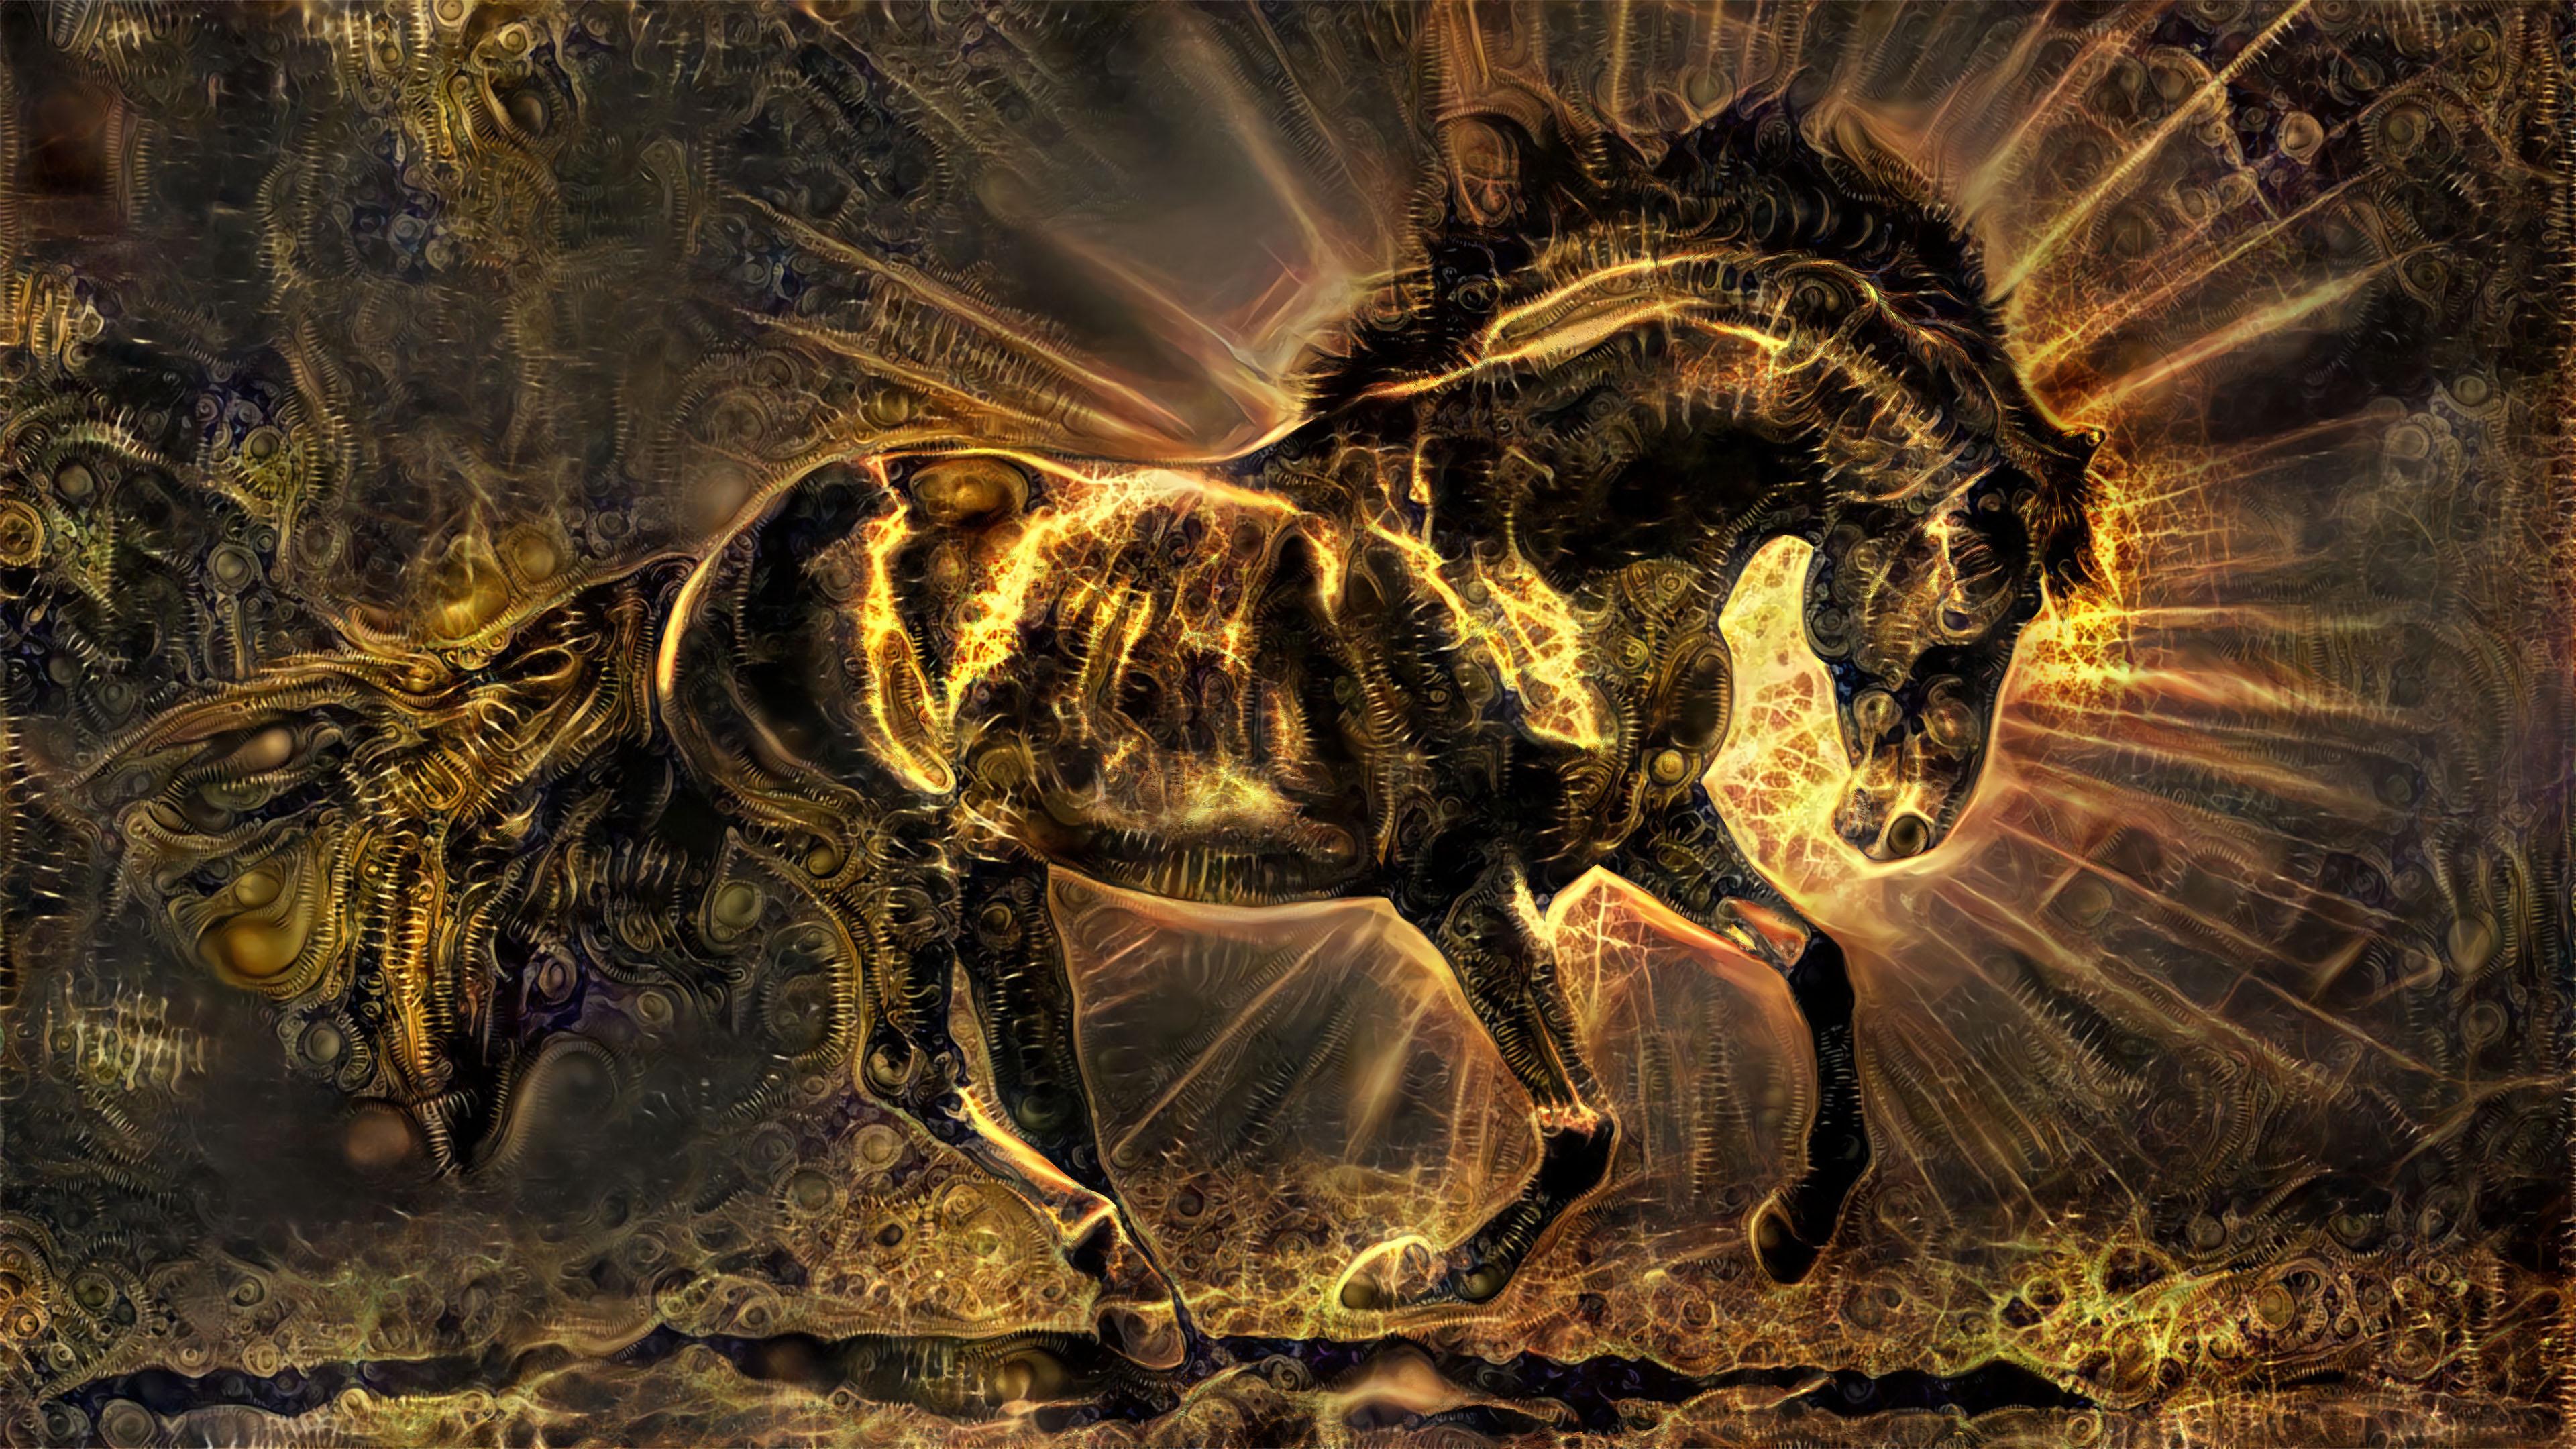 Darkhorse An UHD Wallpaper Deepdream